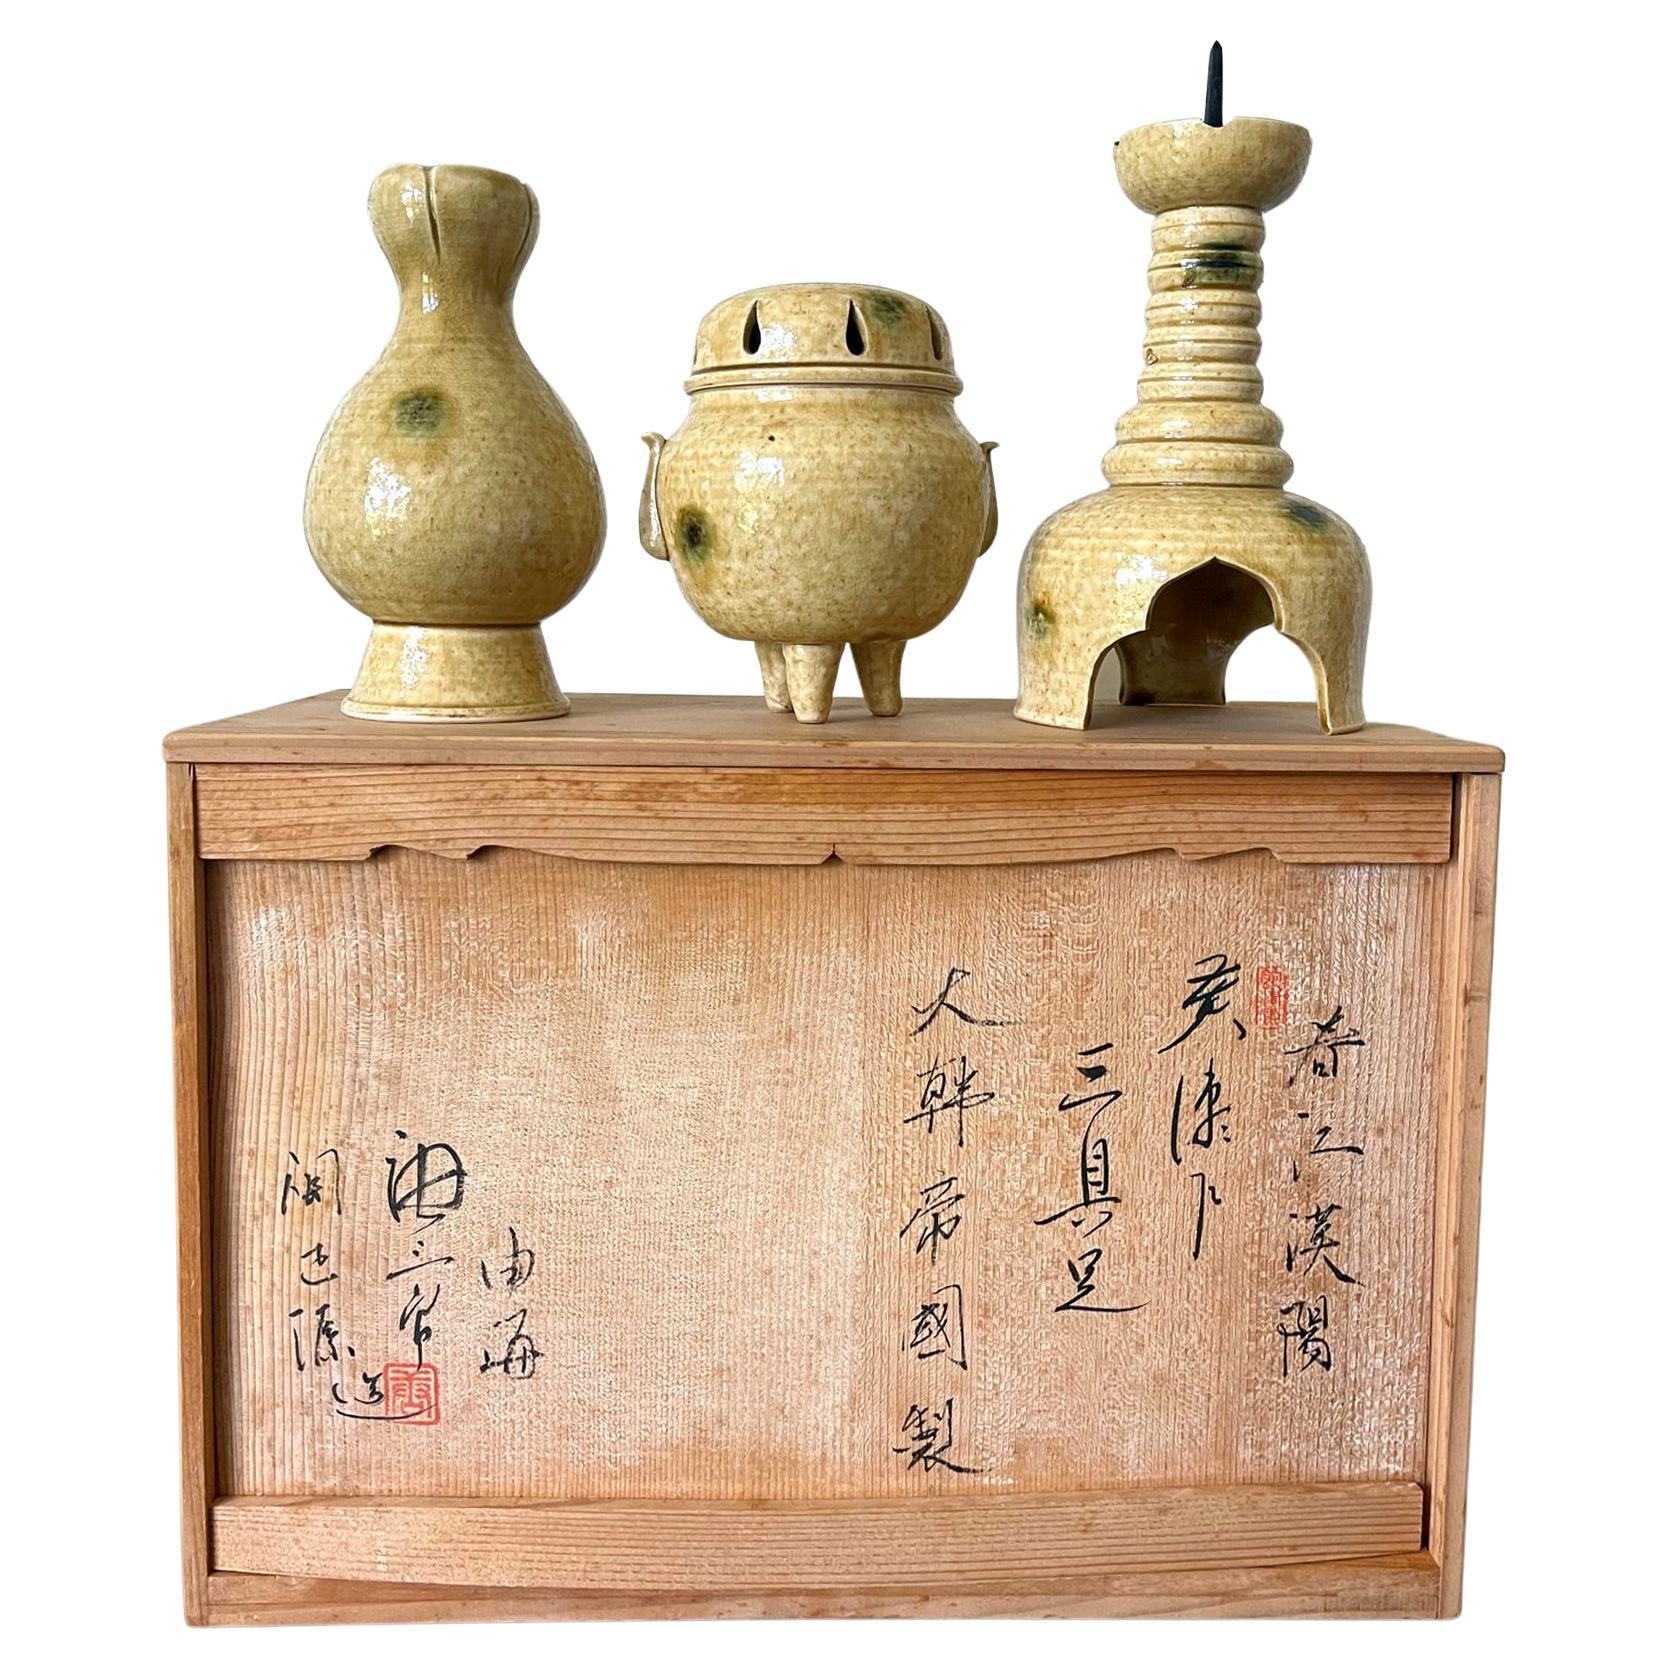 Set of Ki-Seto Ceramic Altar Pieces from Korean Empire Period